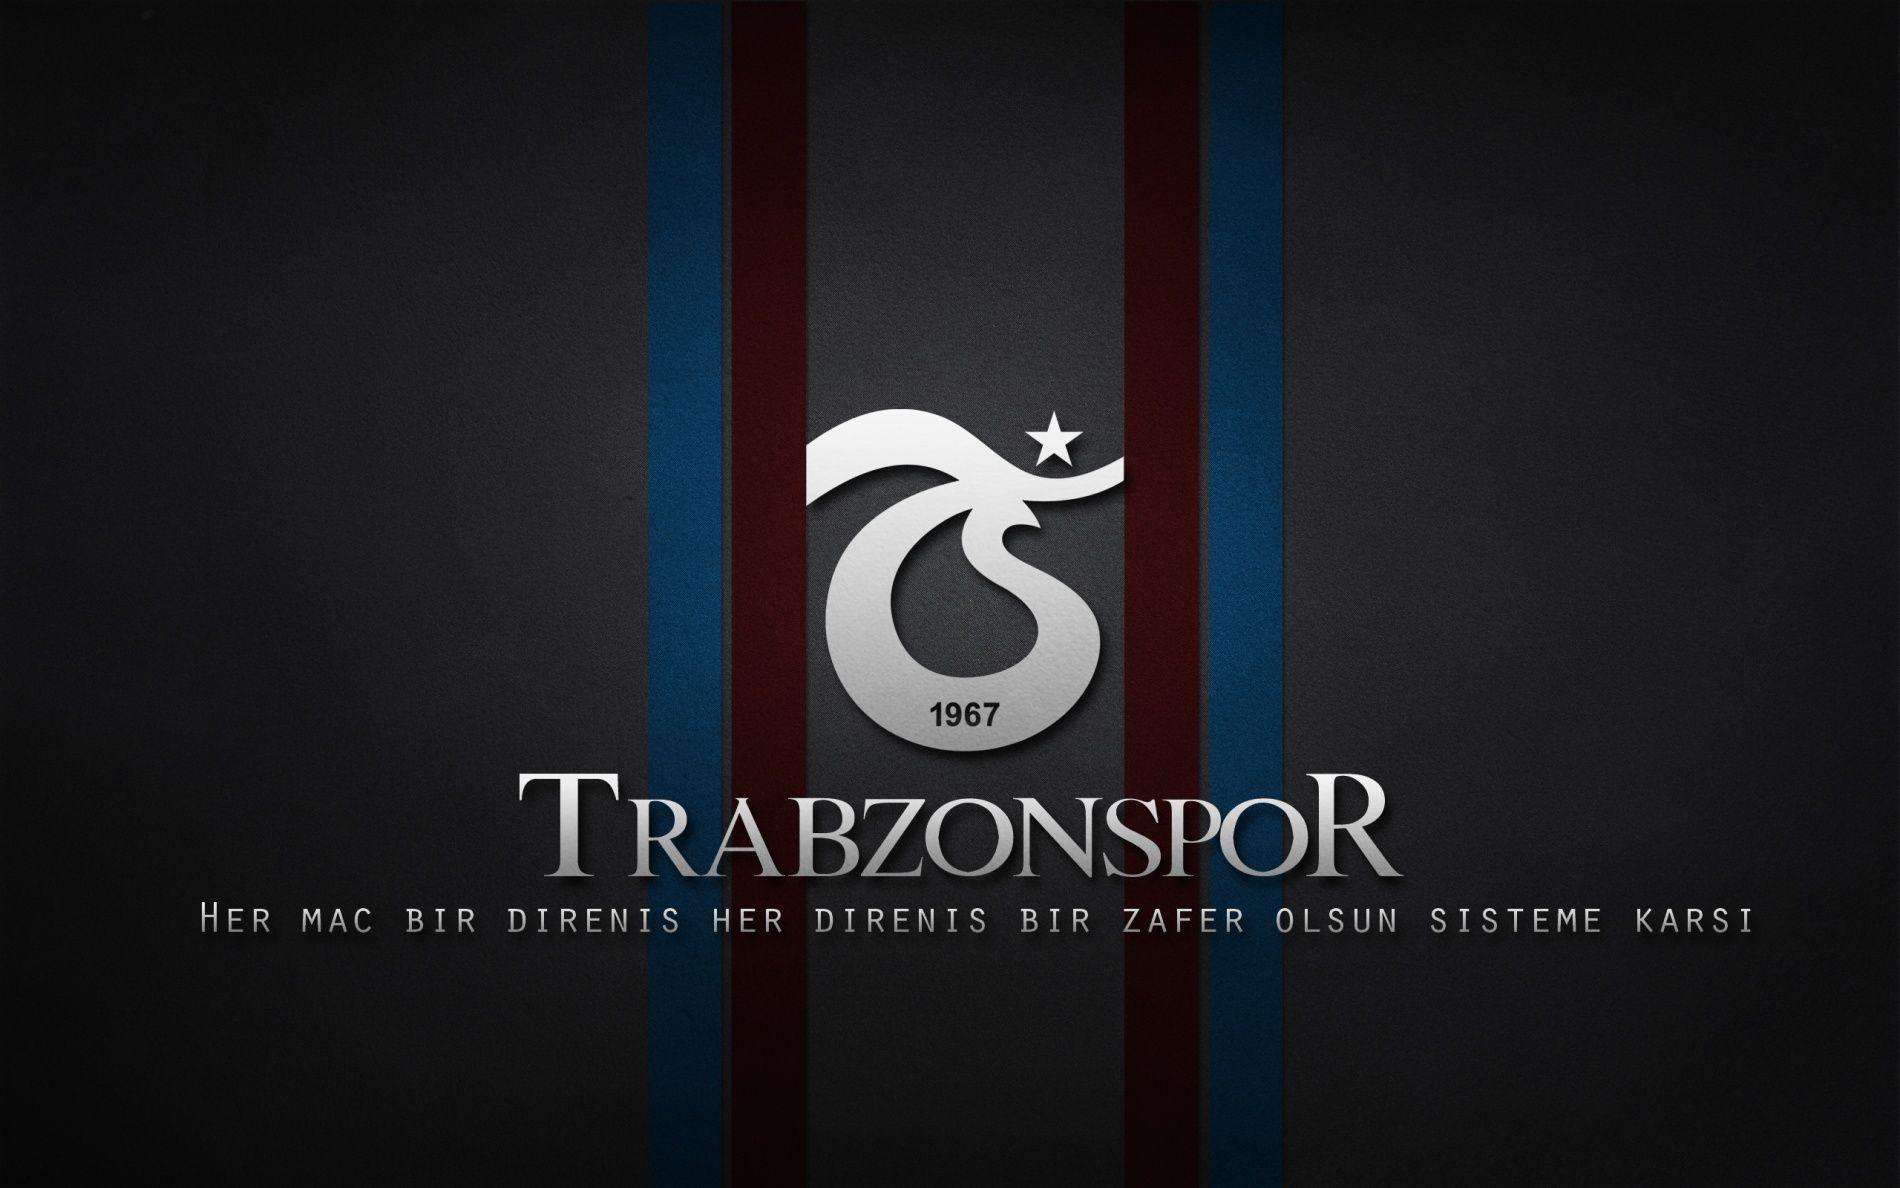 TrabzonSpor Duvar Kağıtları 2014 [Arşiv]ürkçe Forum, Forum